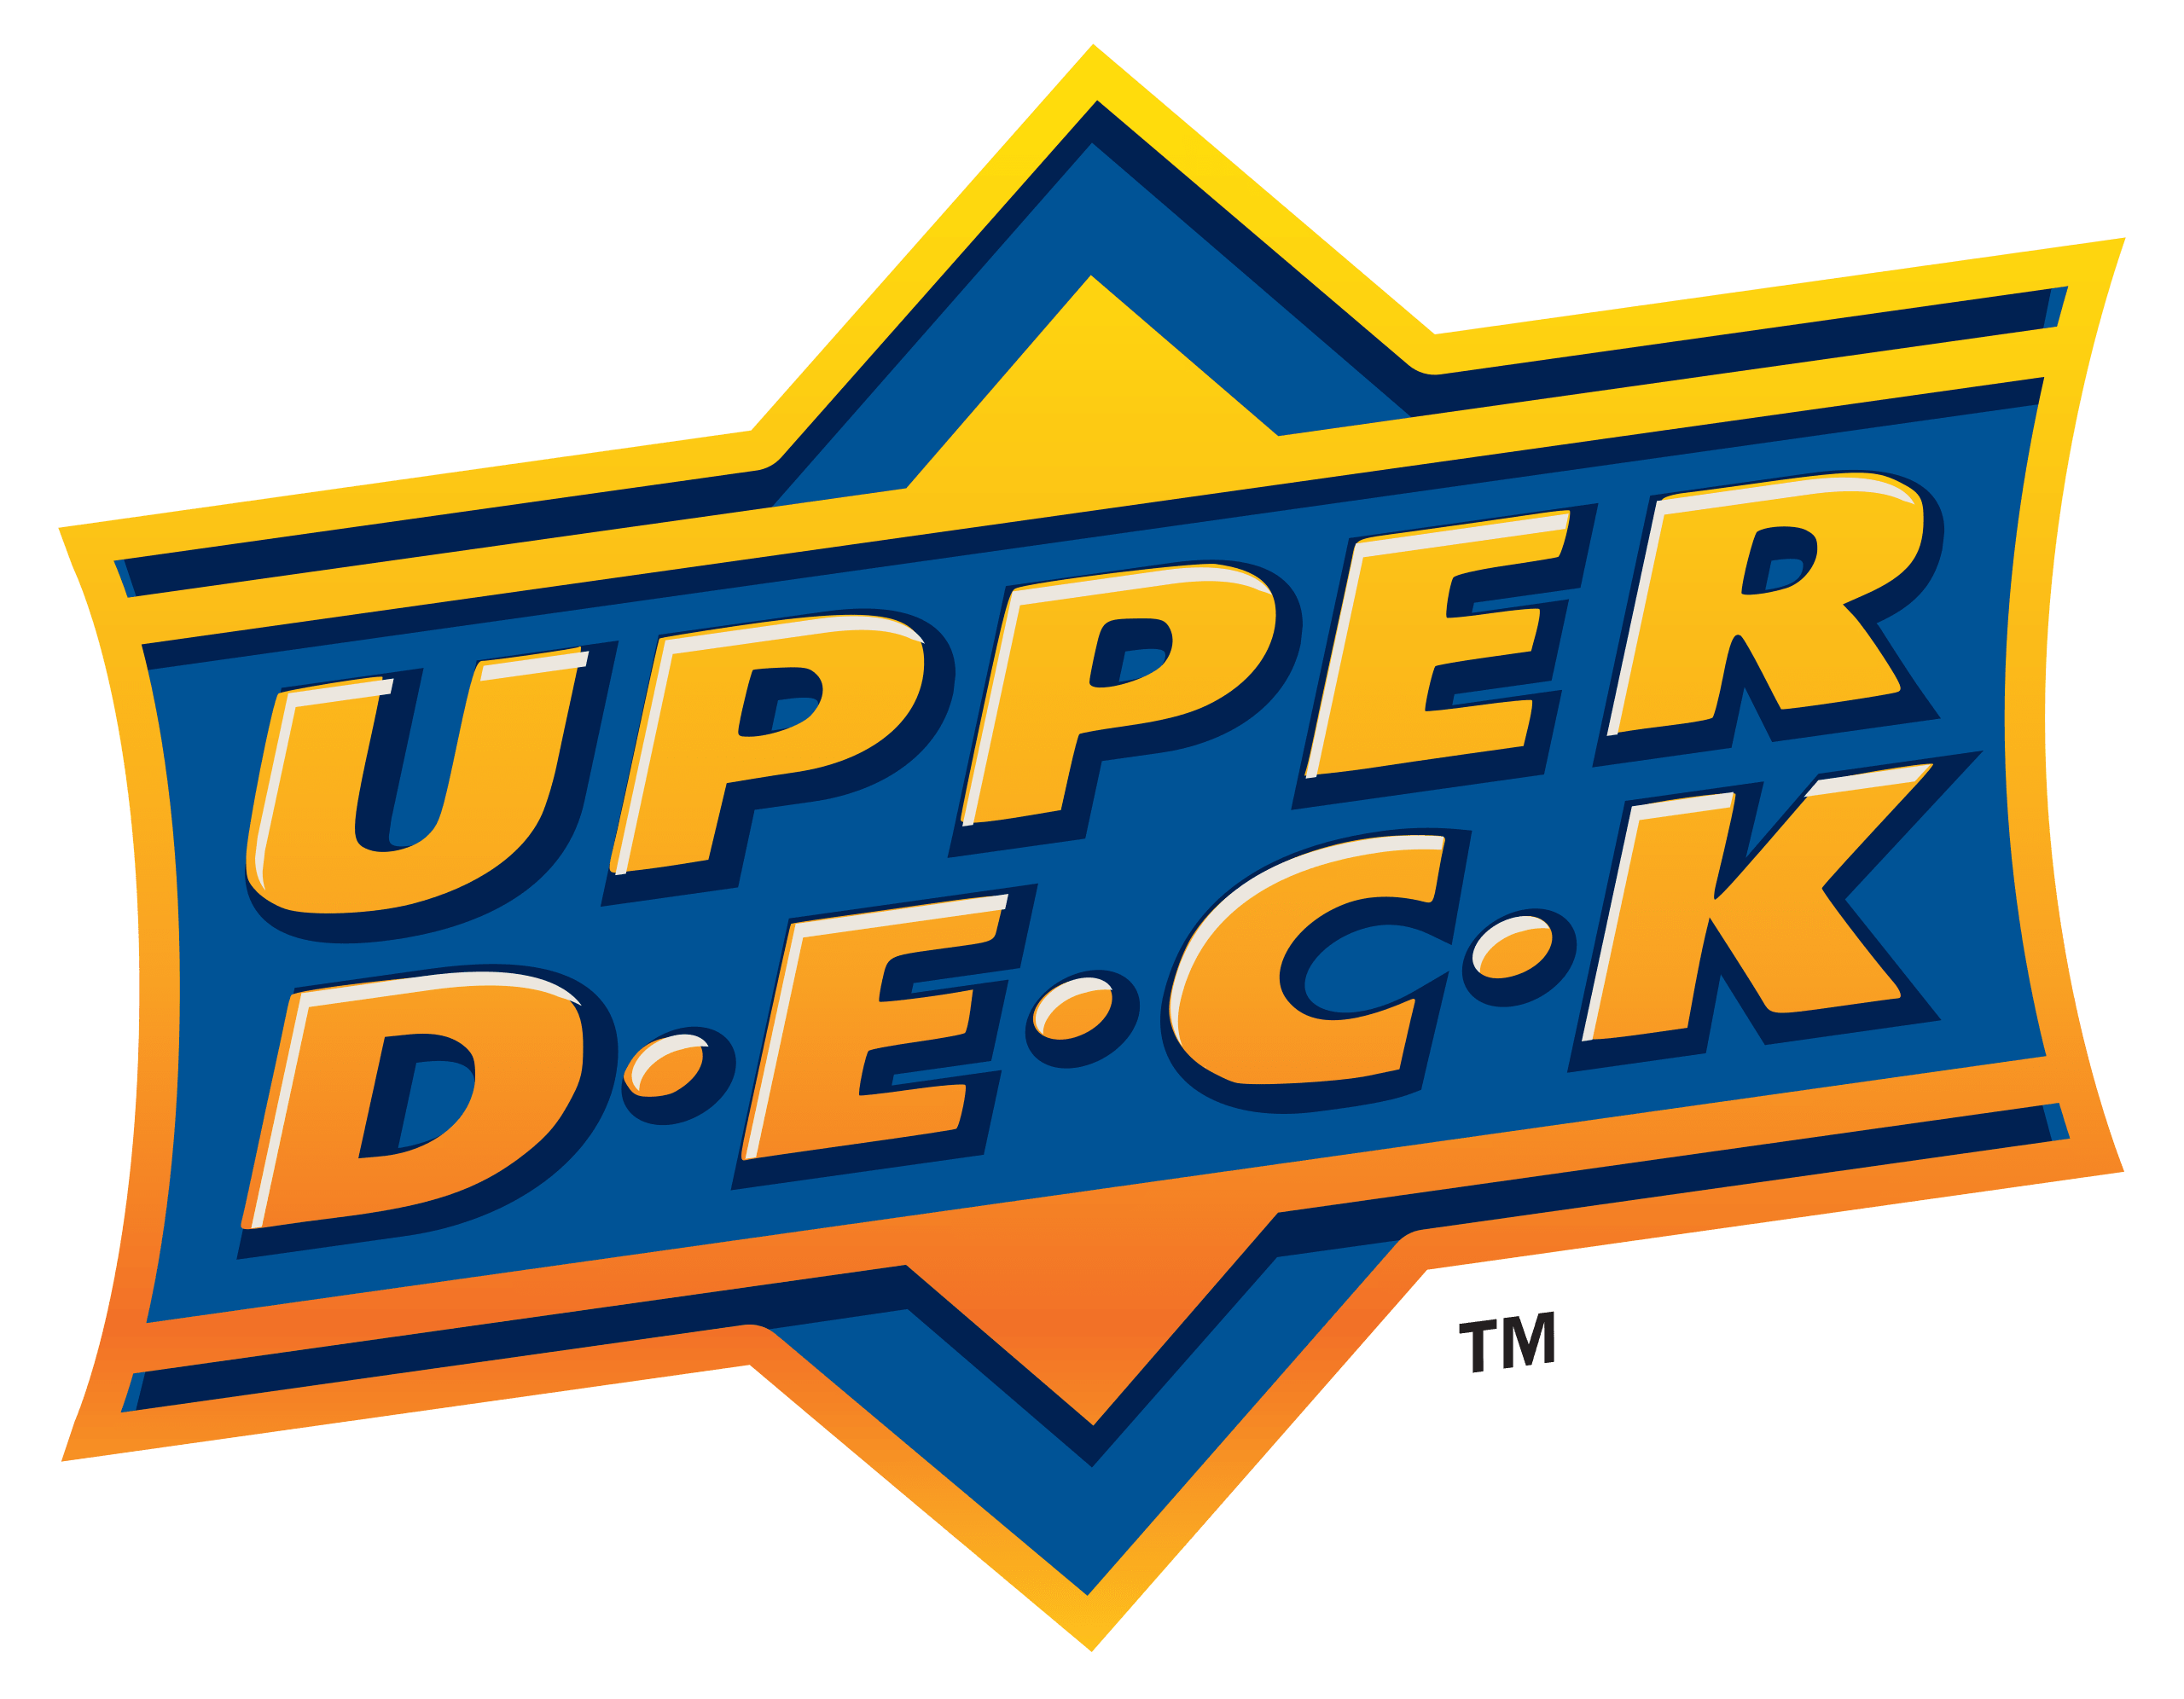 Hockey - 2021/22 - Upper Deck Artifacts - Hobby Box (8 Packs) - Hobby Champion Inc